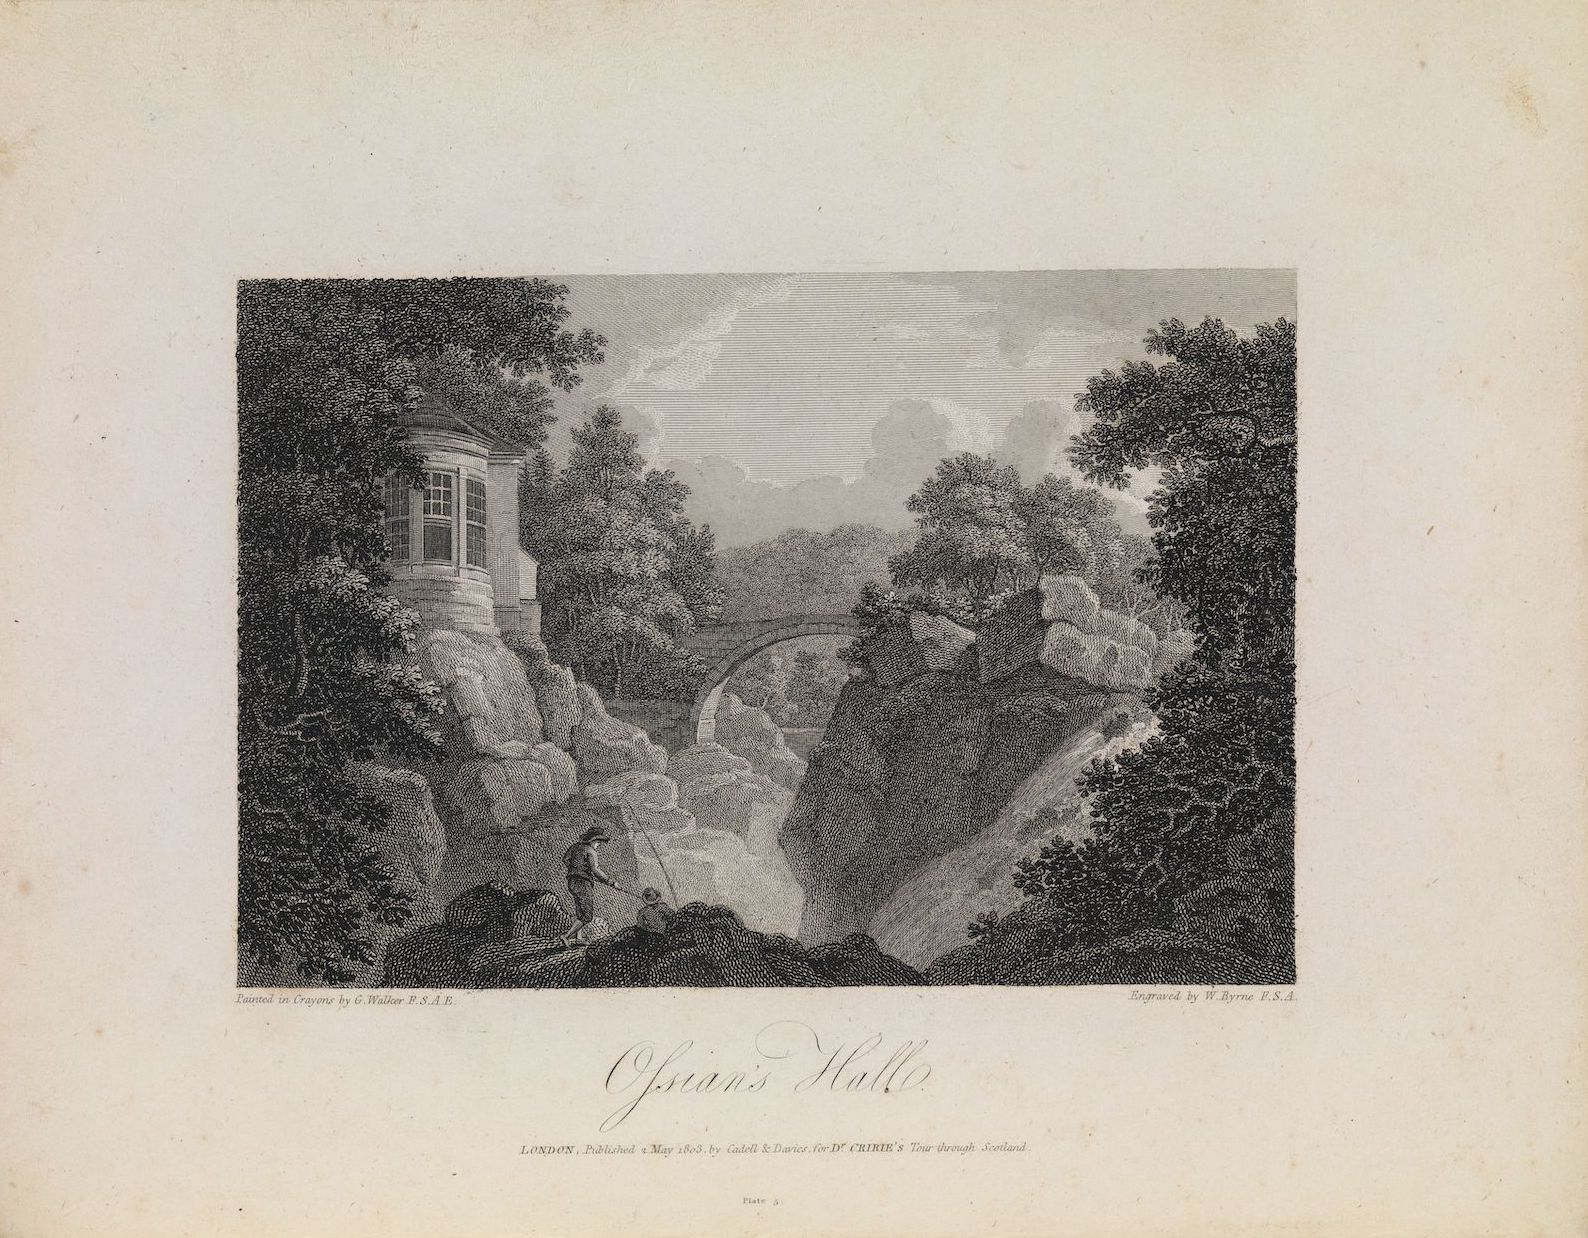 William Byrne after George Walker, 'Ossian's Hall, Dunkeld', engraving, 1803